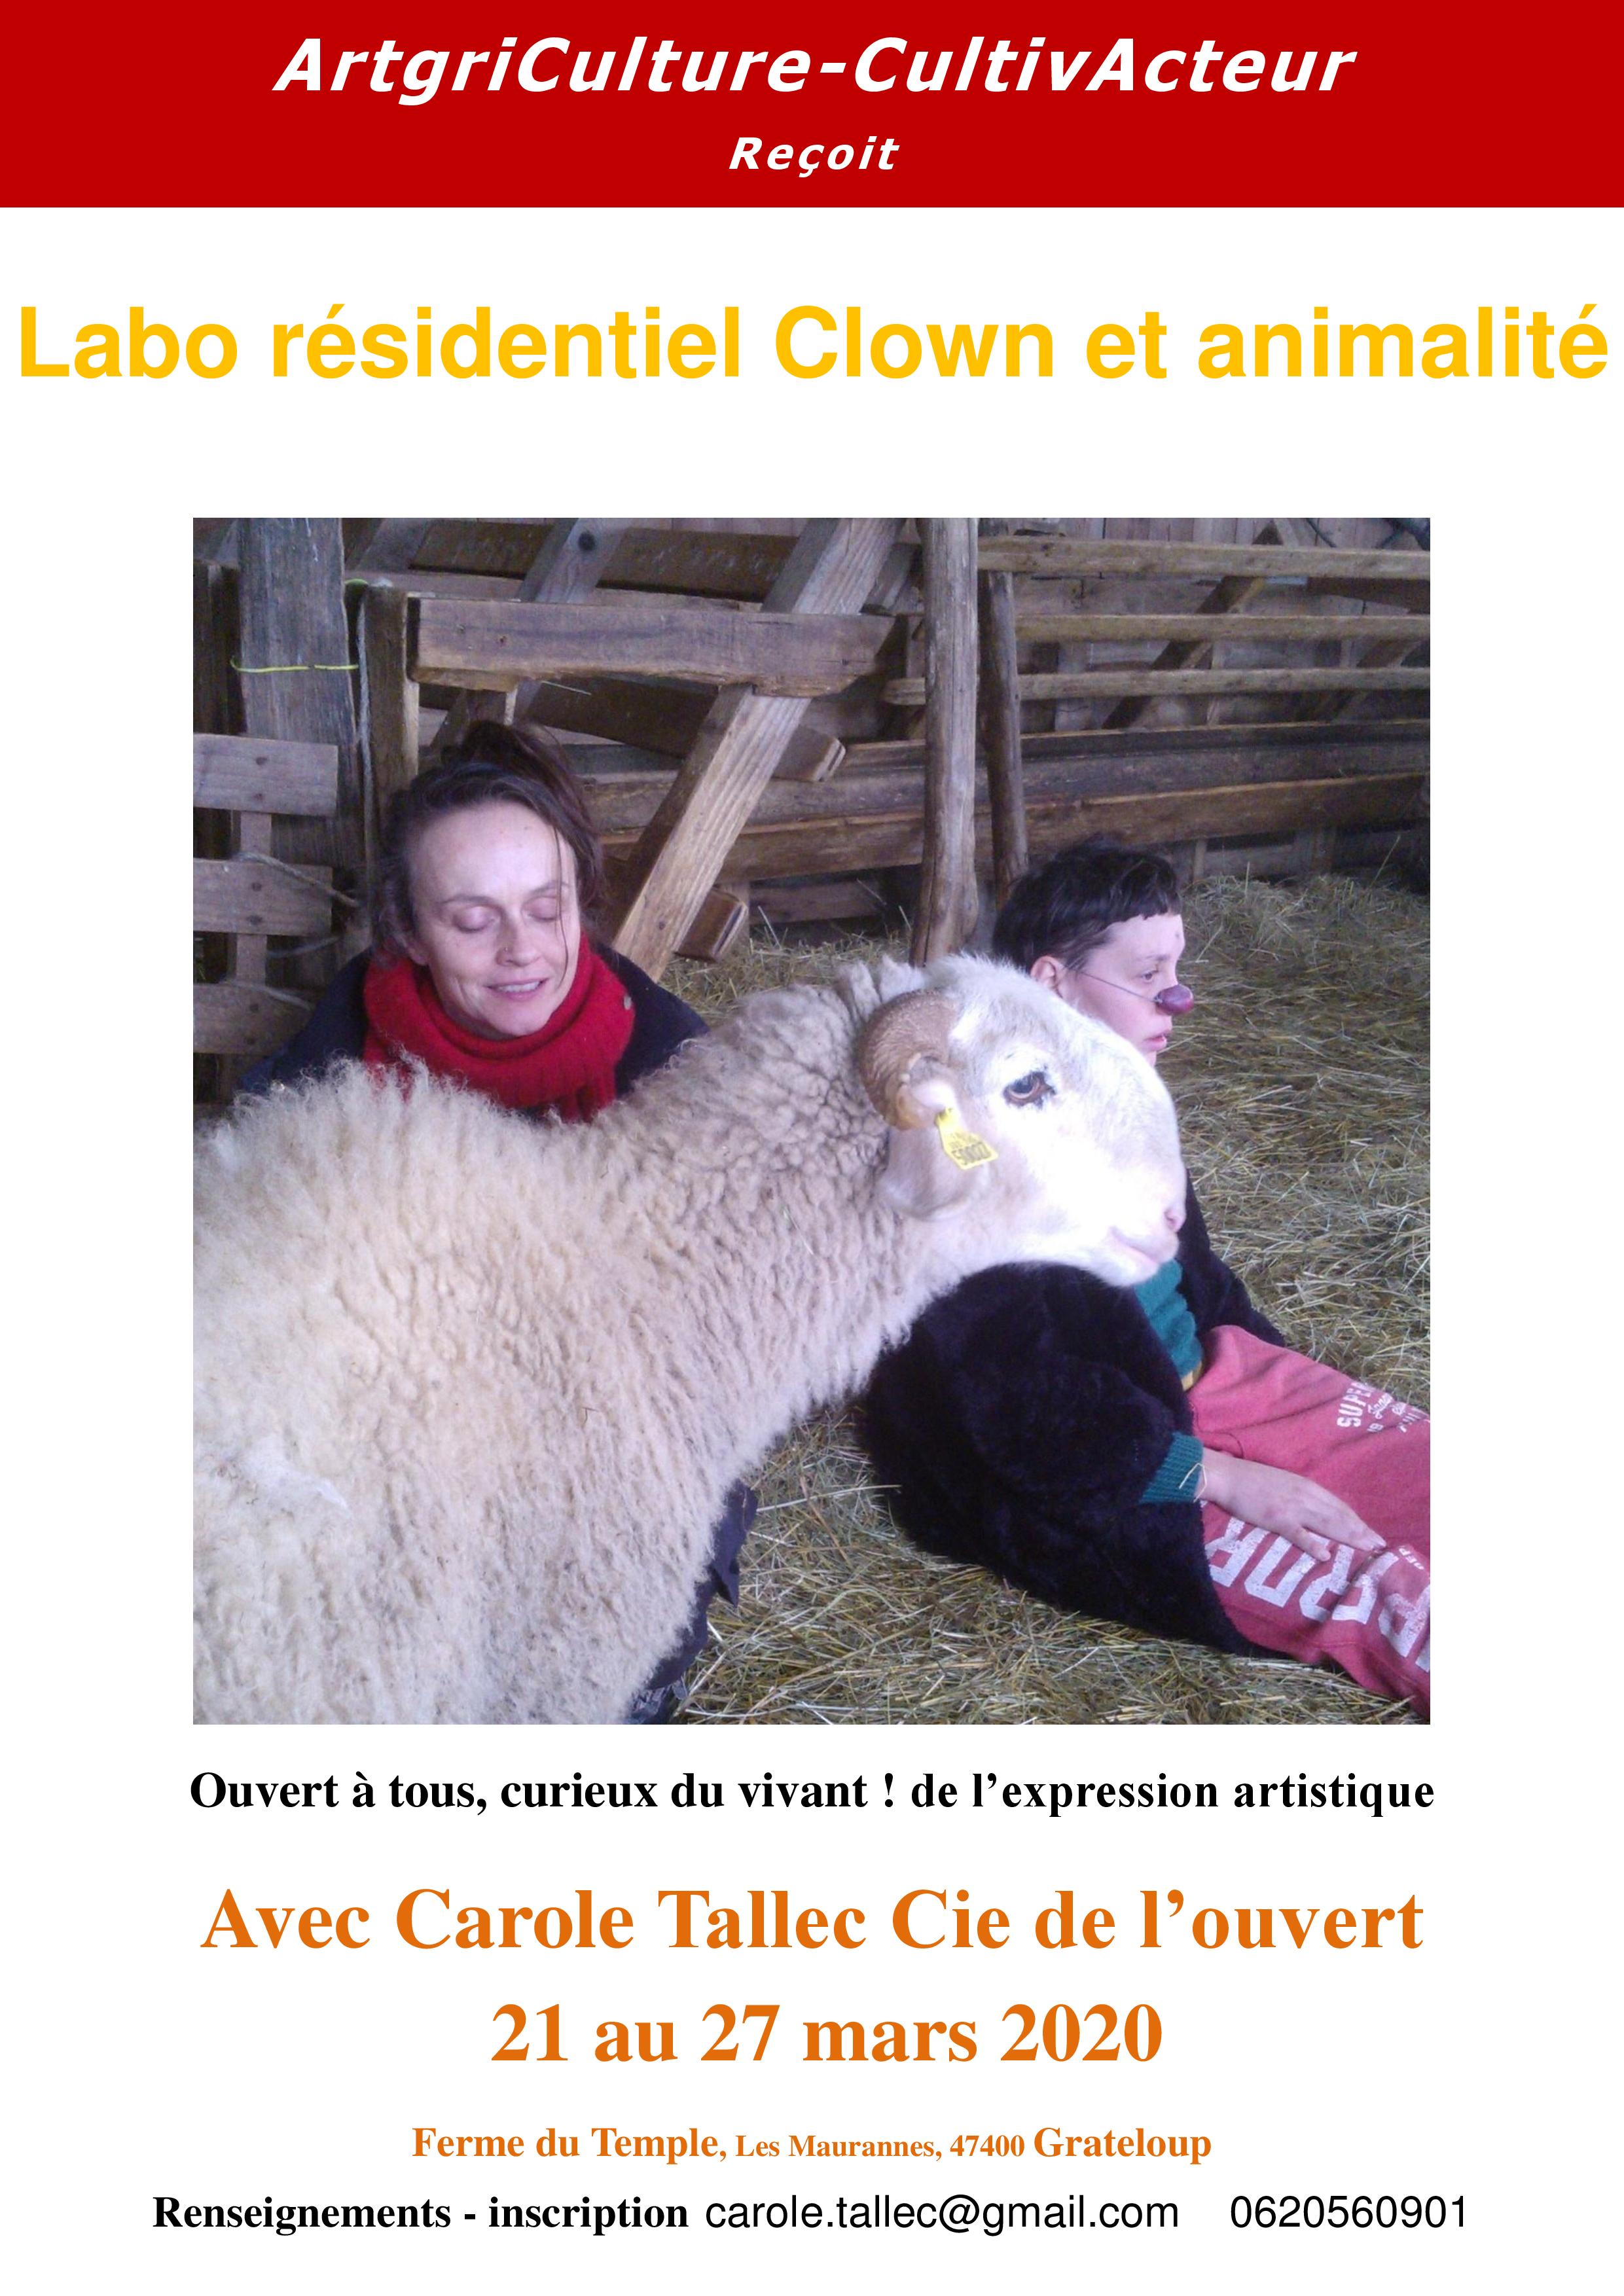 Labo "Clown et animalité" avec Carole Tallec